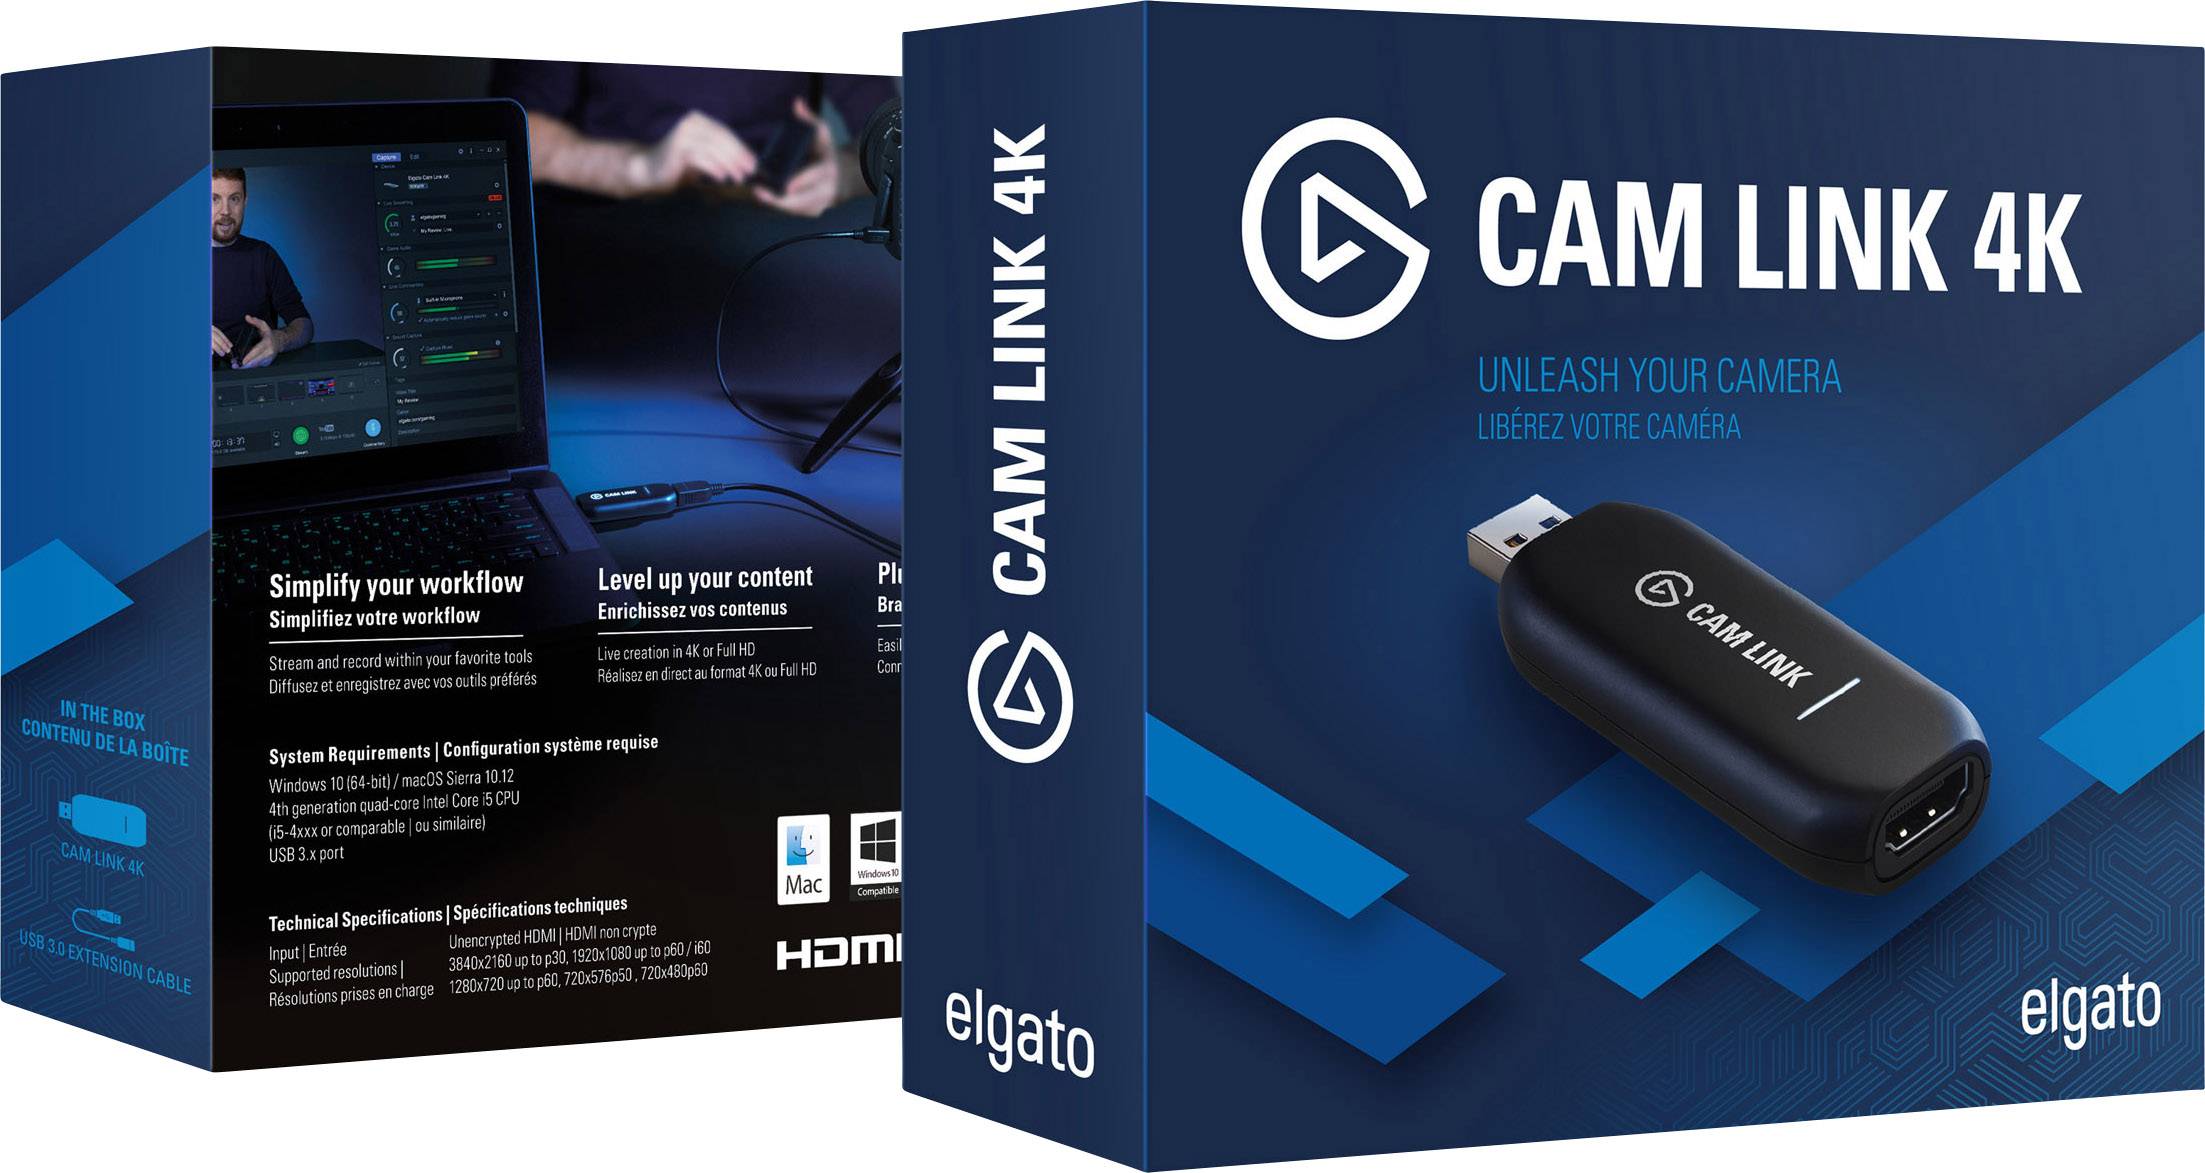 Elgato Cam Link 4k Hdmi 10gam9901 Streaming Stick Conrad Nl